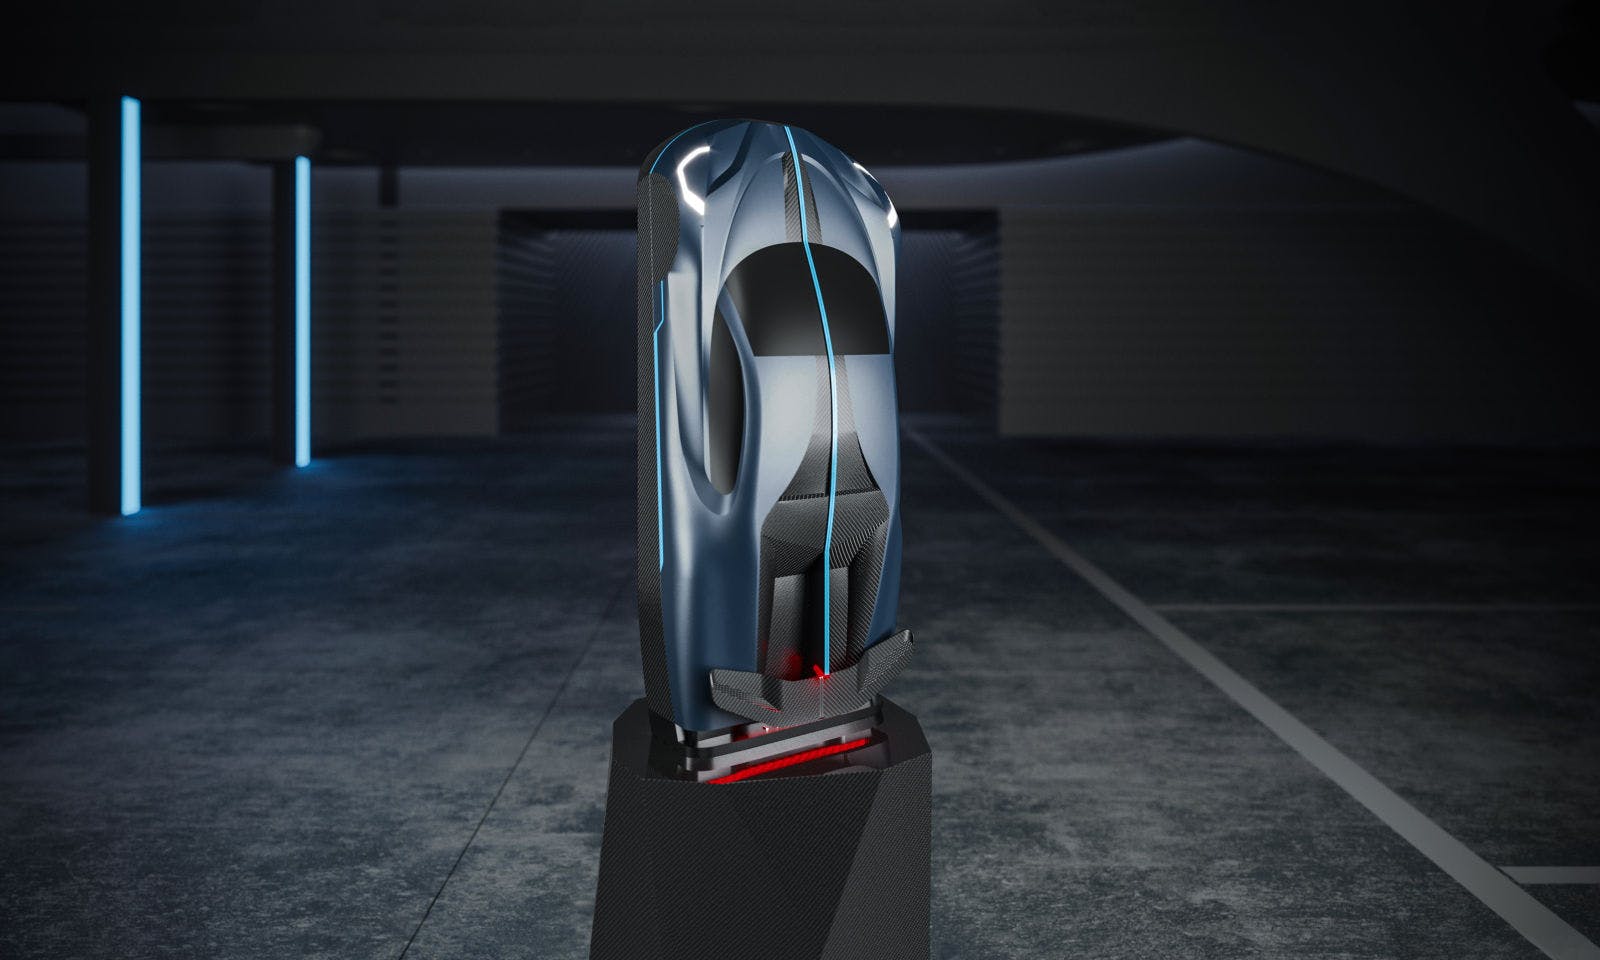 Each ‘La Bouteille Sur Mesure’ case is a sculptural representation of a Bugatti hyper sports car.